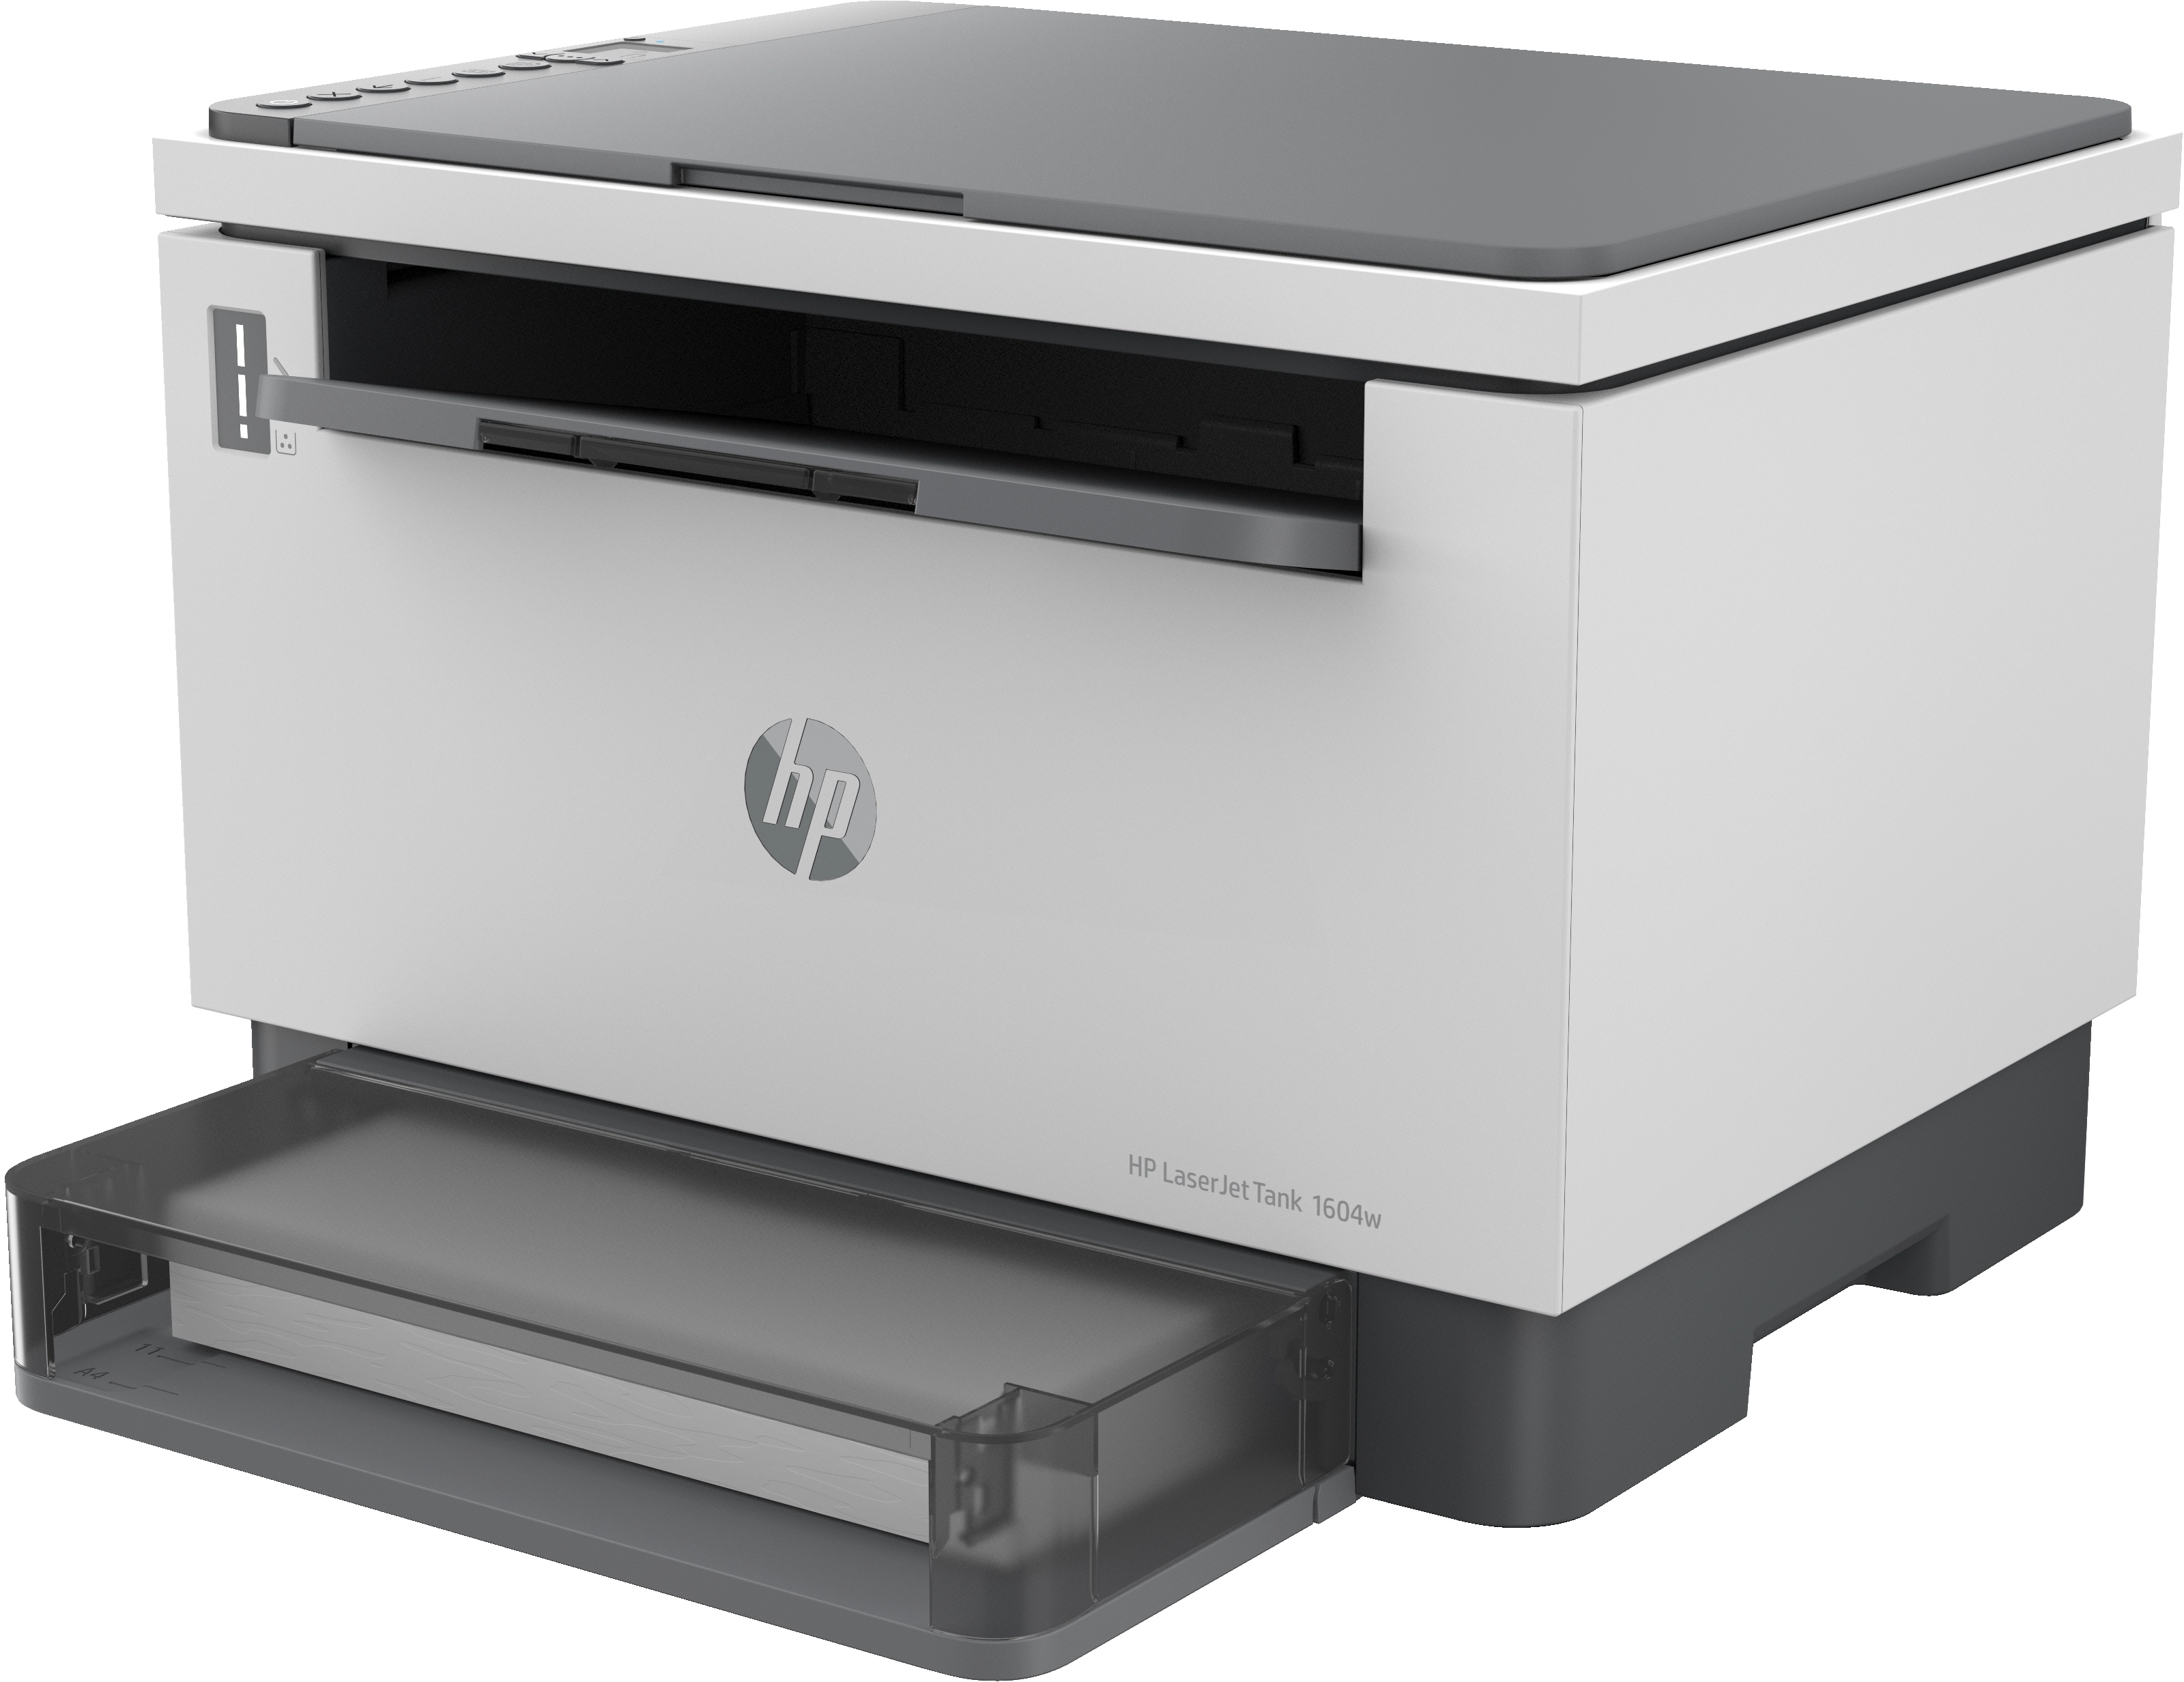 HP LaserJet Tank MFP 1604w - Multifunktionsdrucker - s/w - Laser - 216 x 297 mm (Original)